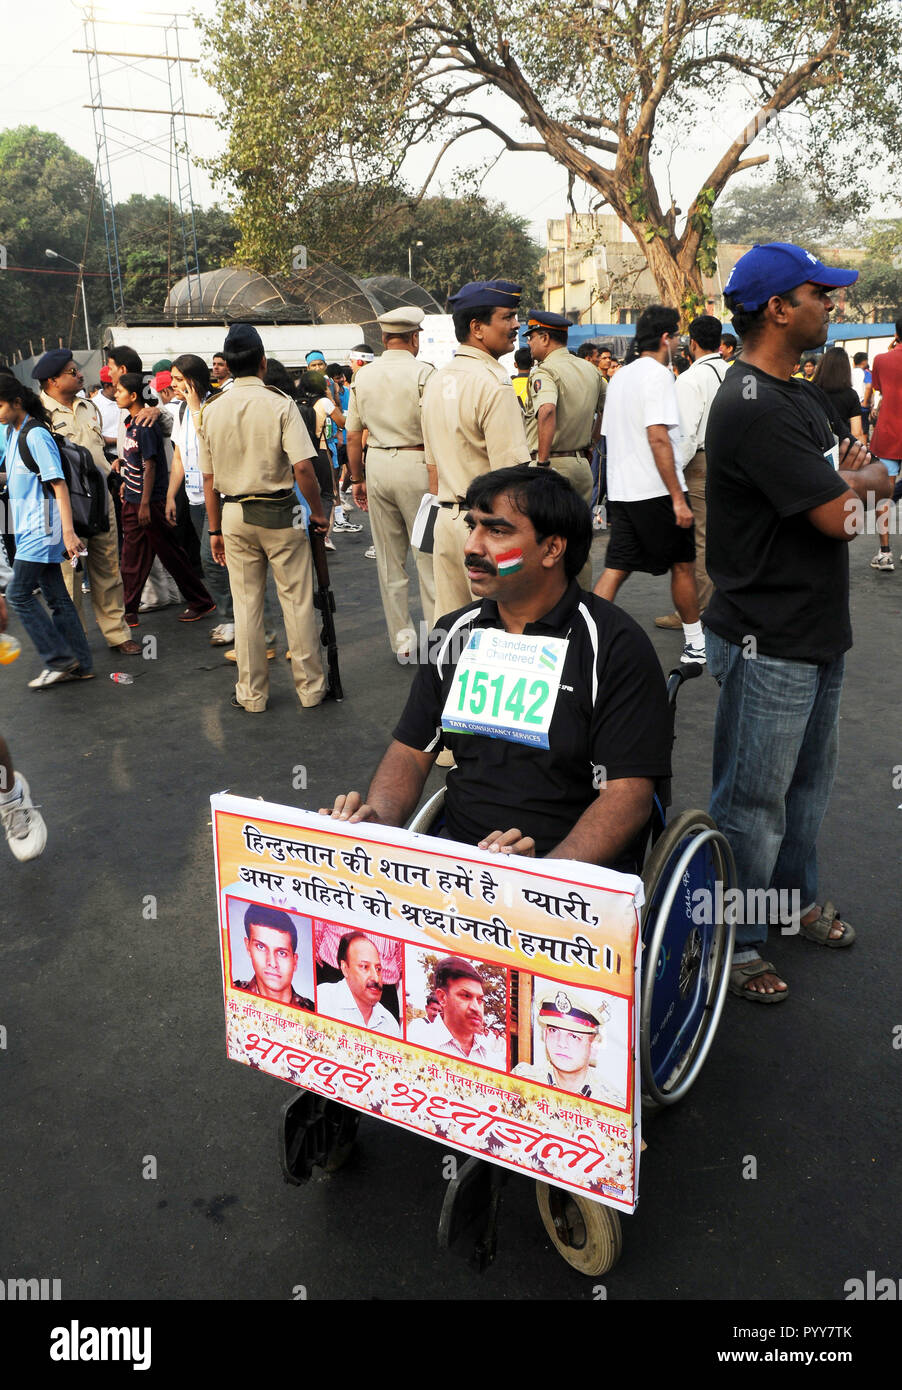 Behinderte Rollstuhl Teilnehmer demonstrieren in Marathon, Mumbai, Maharashtra Indien, Asien Stockfoto